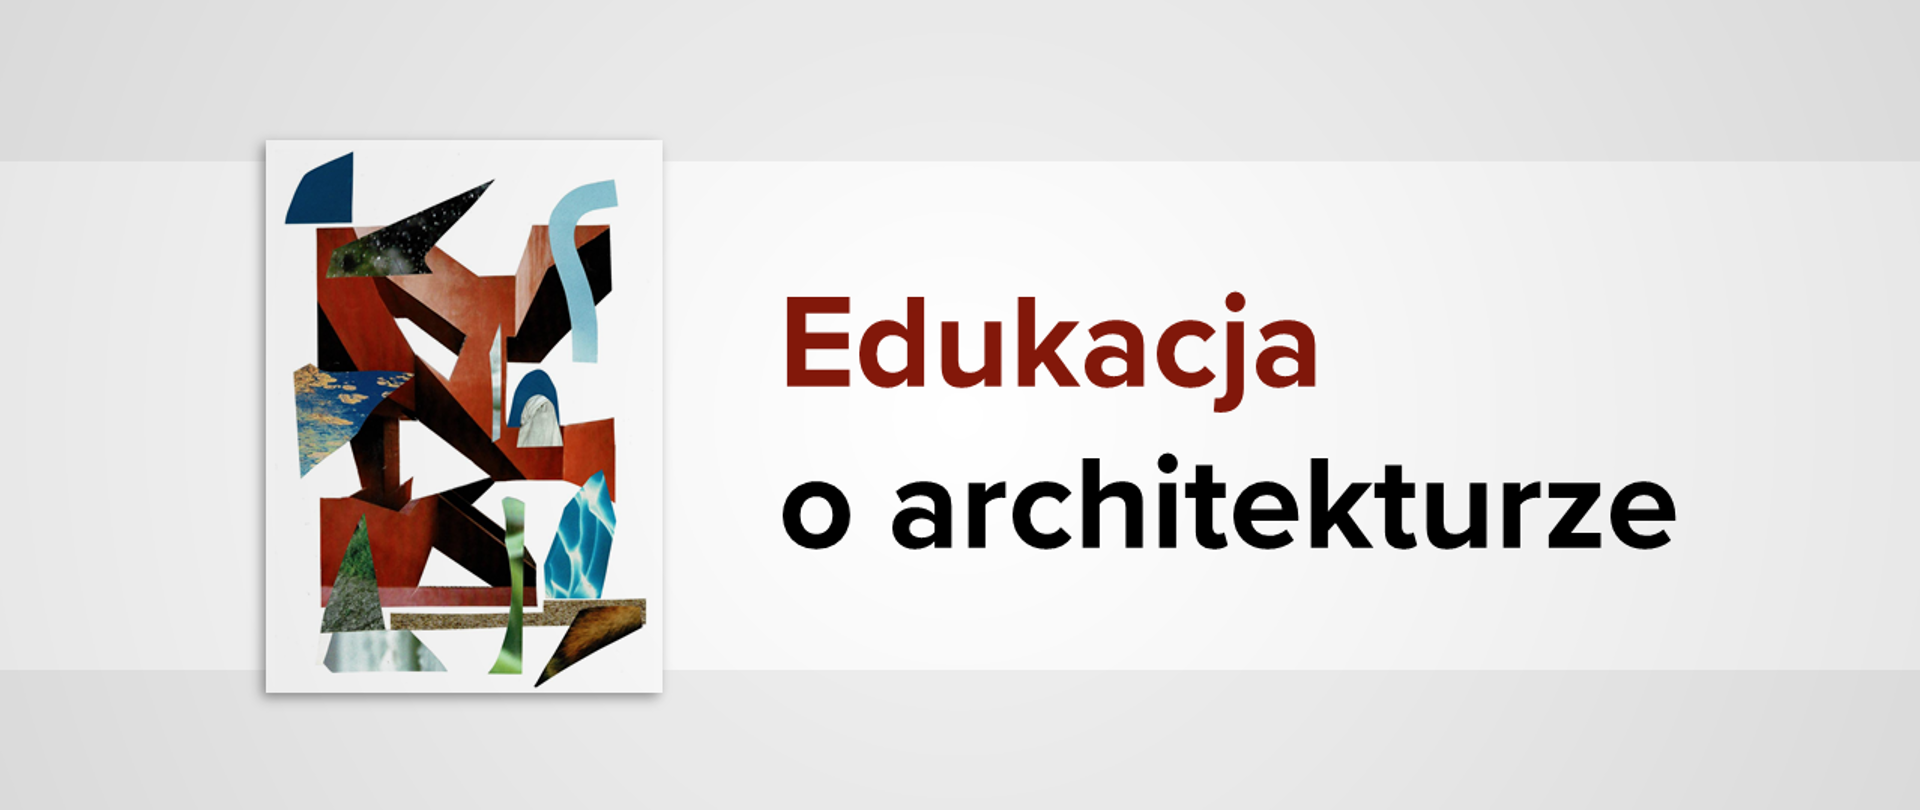 Biało-szara grafika z wycinankowym obrazkiem i tekstem: "Edukacja o architekturze"